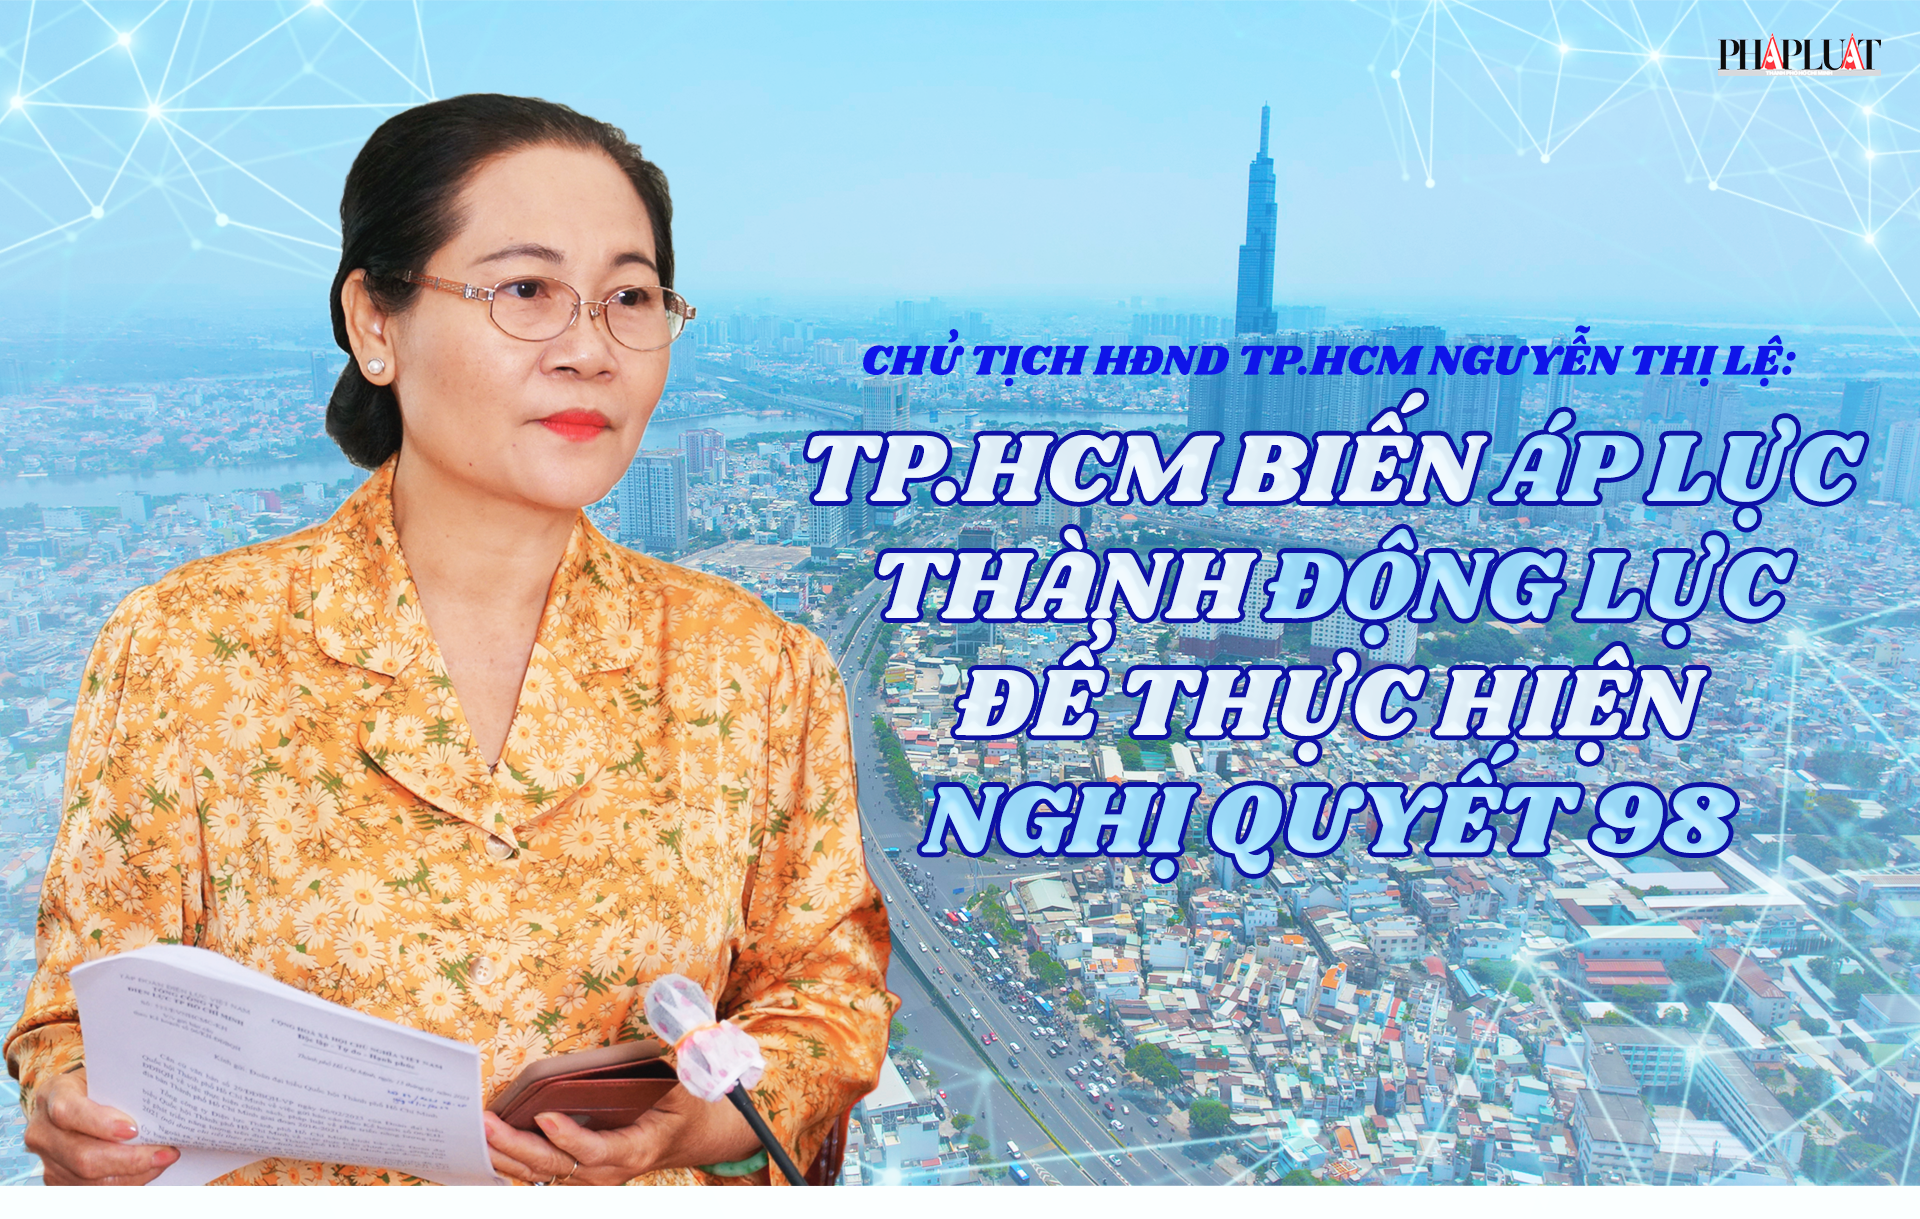 Chủ tịch HĐND TP.HCM Nguyễn Thị Lệ: TP.HCM biến áp lực thành động lực mạnh mẽ để thực hiện Nghị quyết 98